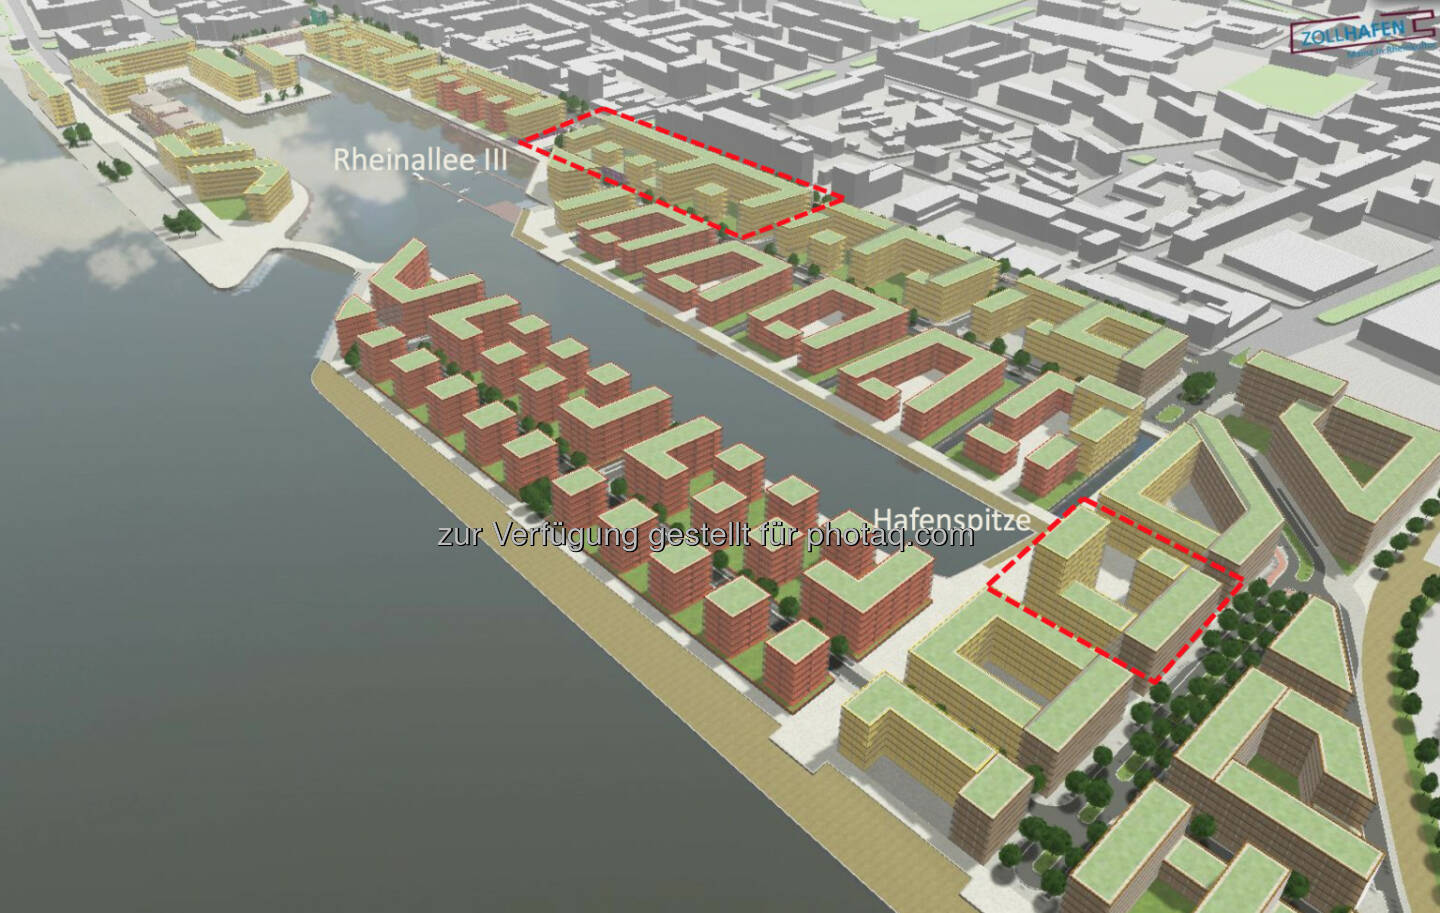 CA Immo kauft zwei Baufelder im Zollhafen Mainz: Hier eine abstrakte Baumassenvisualisierung mit Lage der Baufelder Hafenspitze und Rheinallee III (Quelle: Zollhafen Mainz)